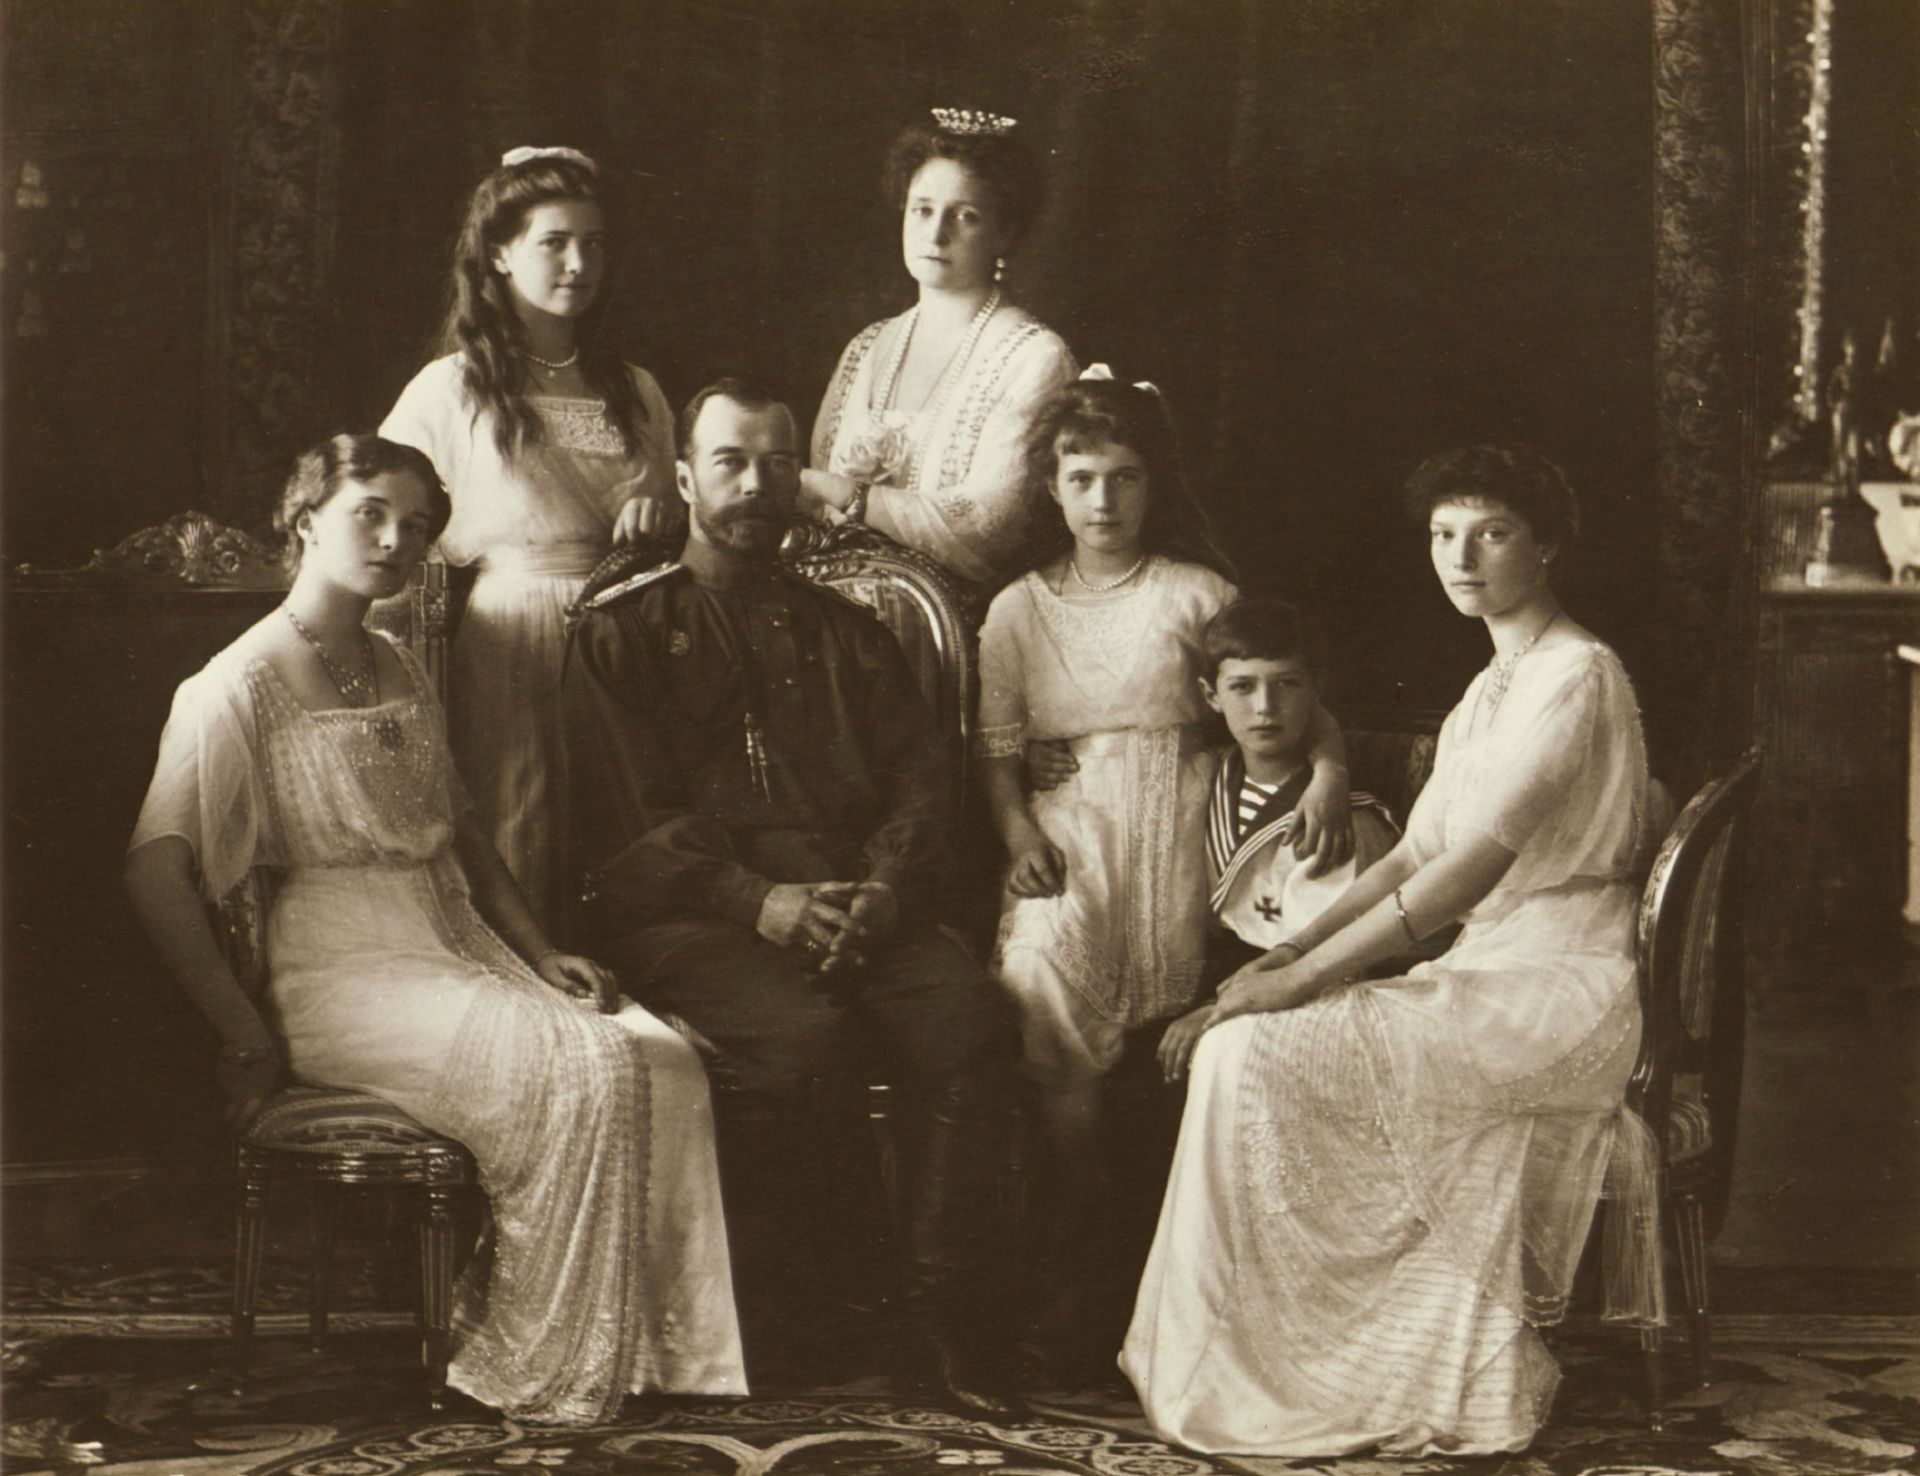 Lire la suite à propos de l’article Dans la nuit du 16 au 17 juillet 1918, la famille impériale russe se faisait assassiner